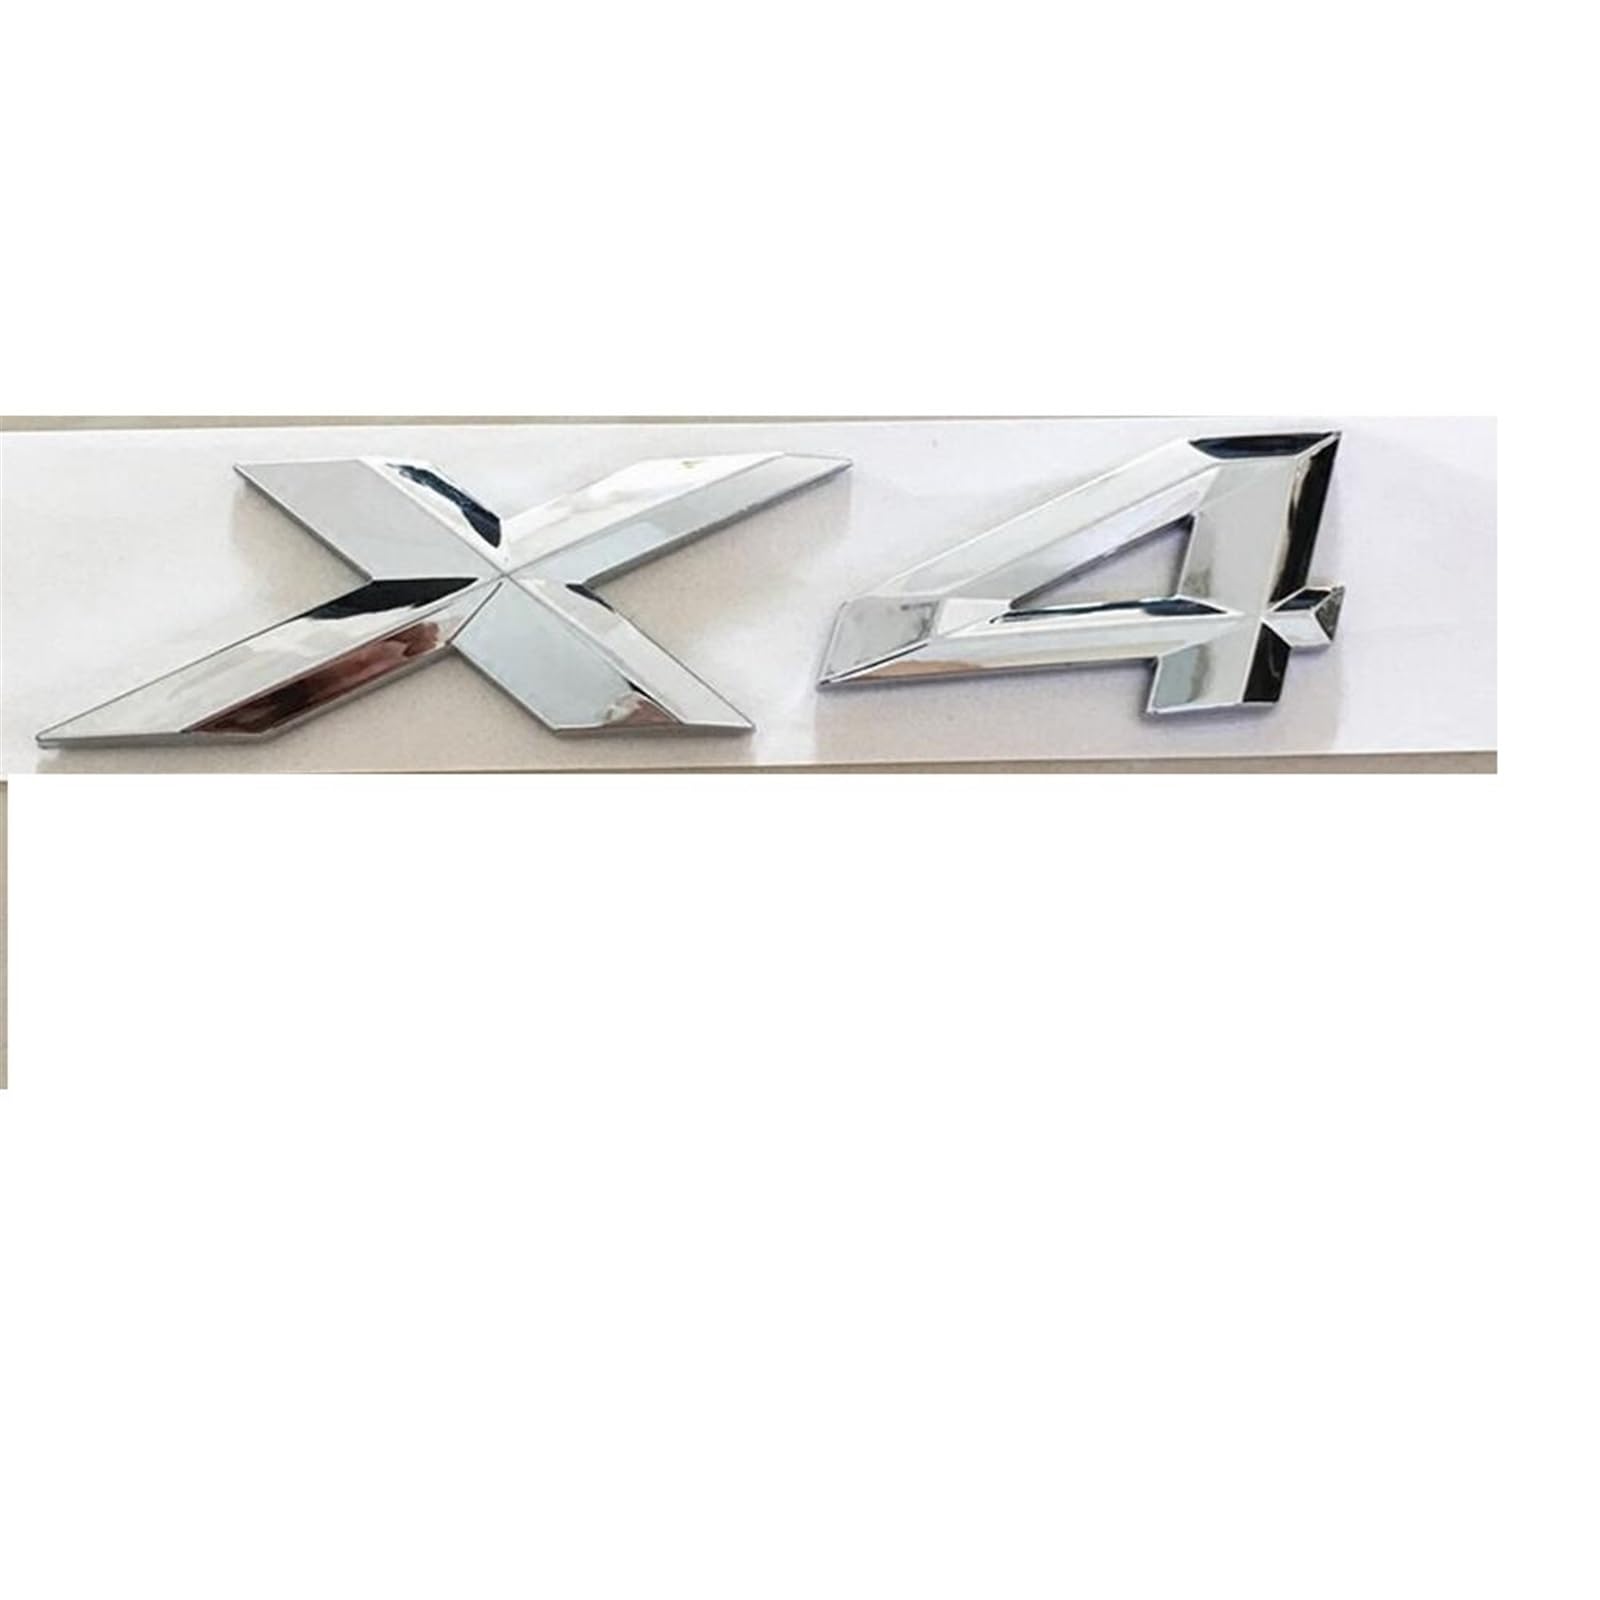 Chrom glänzender silberner Kunststoff-ABS-Nummern-Buchstaben-Wort-Kofferraum-Abzeichen-Emblem-Aufkleber-Aufkleber, kompatibel for BMW X4 von KARFRI